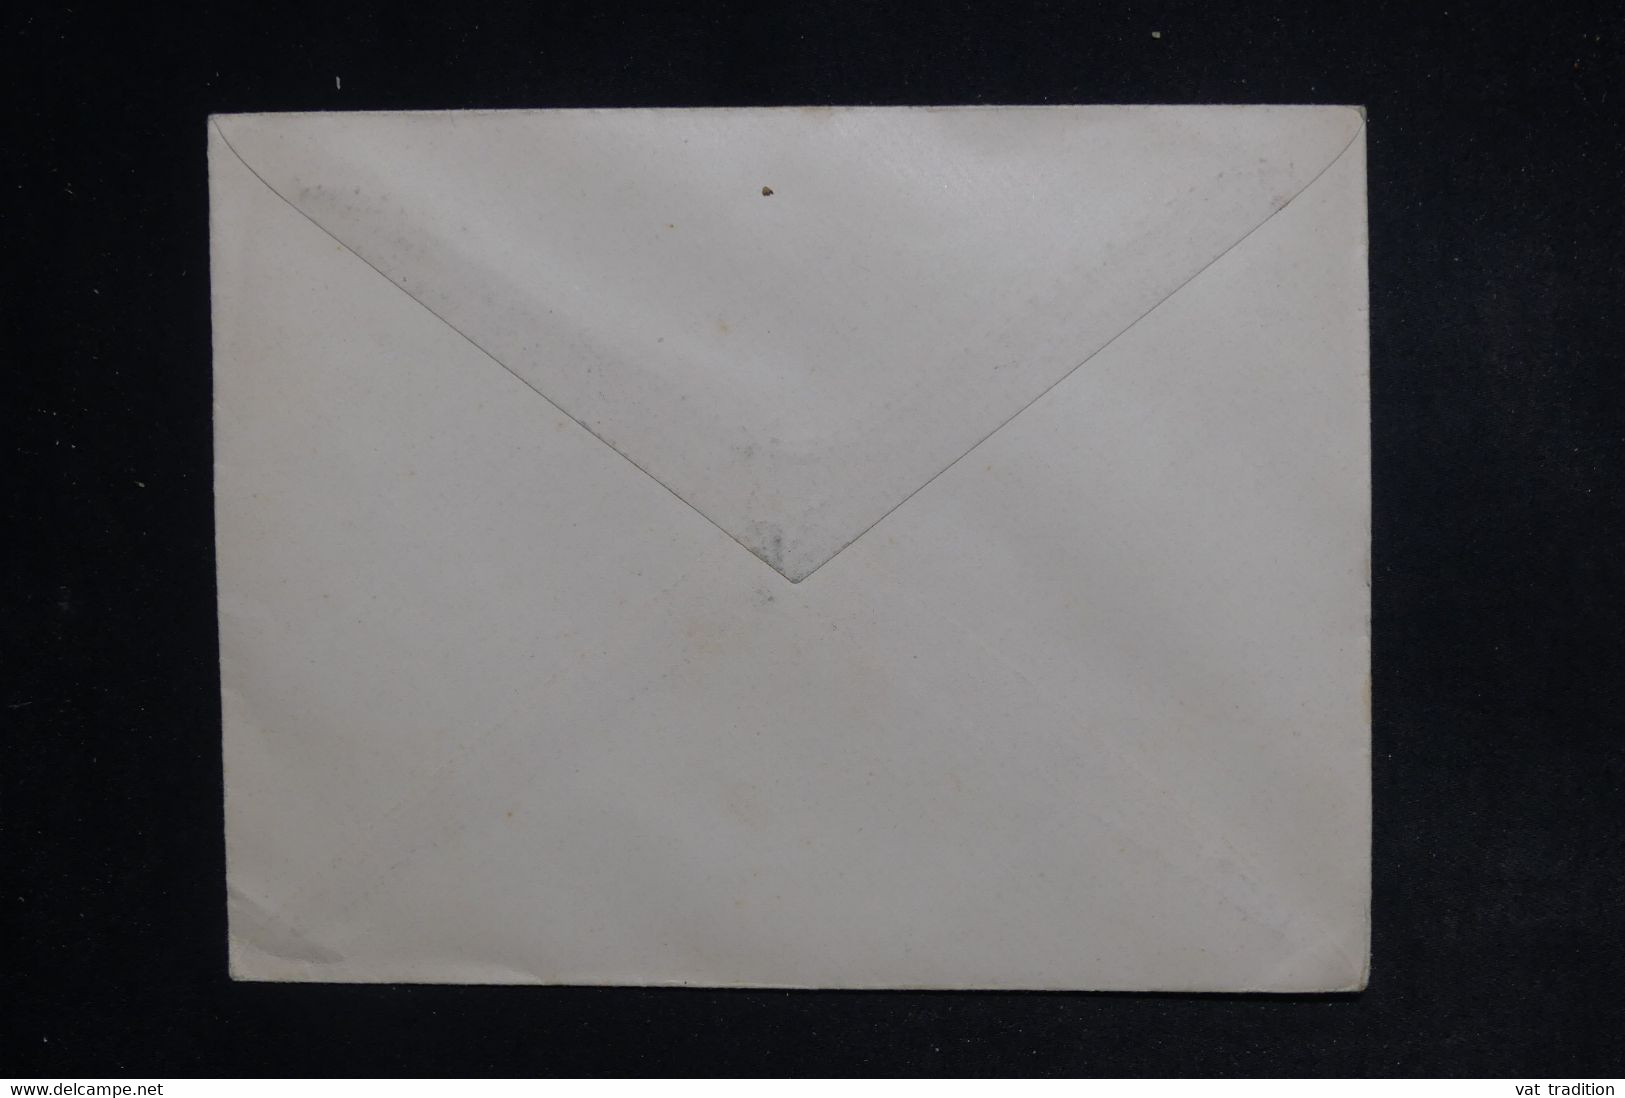 GRECE - 3 Taxes De 1902 Sur Enveloppe - L 122754 - Lettres & Documents